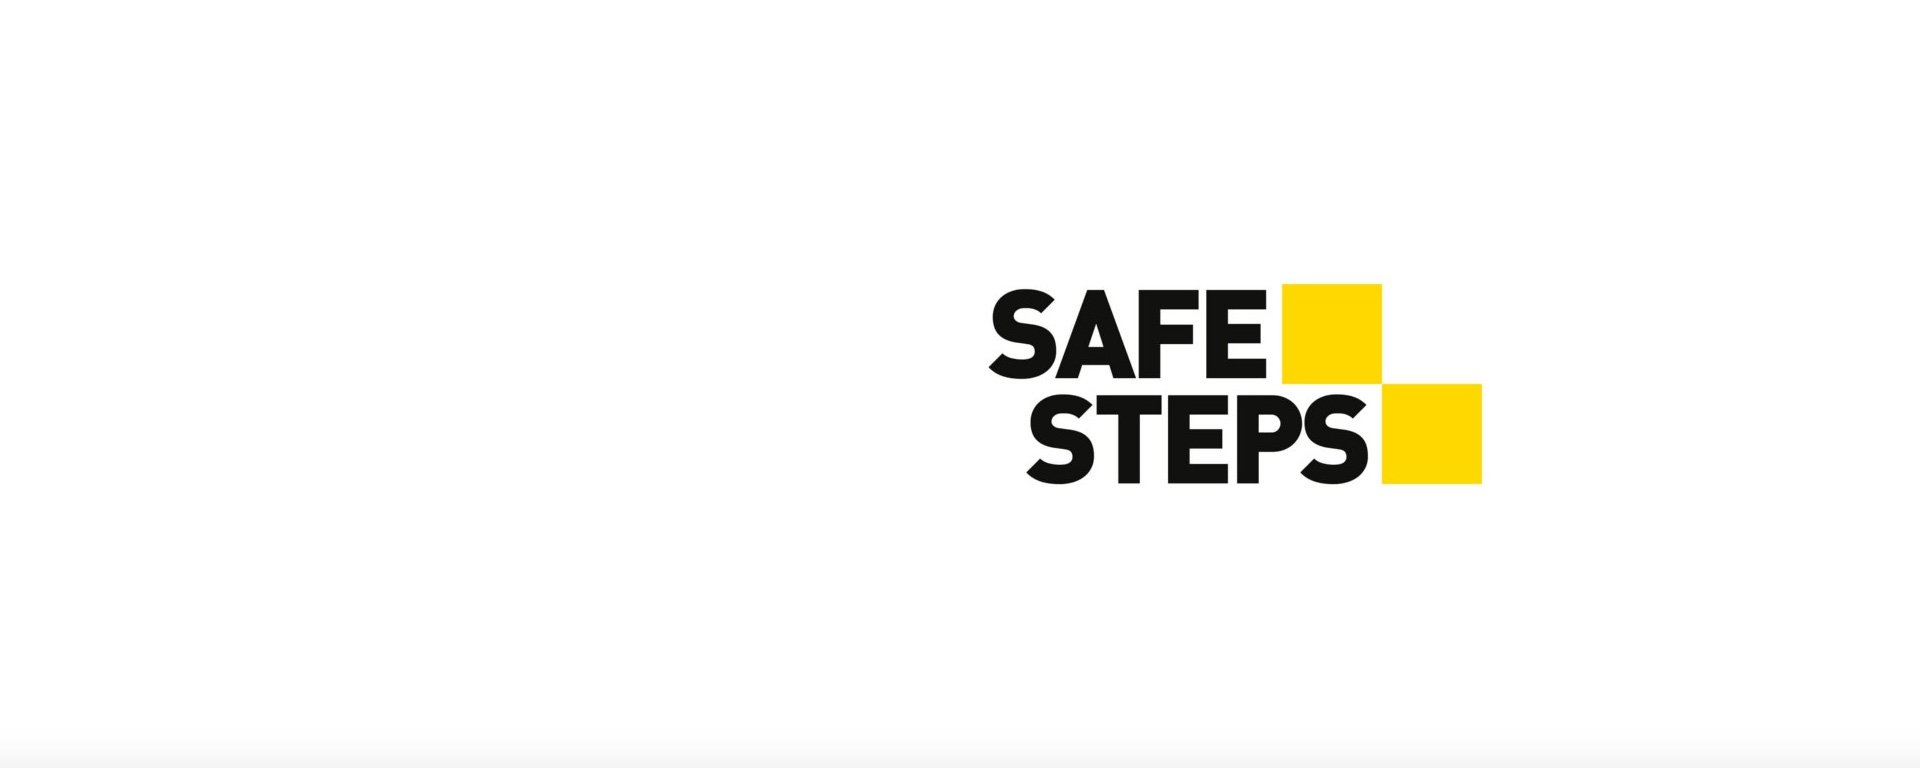 SAFE STEPS